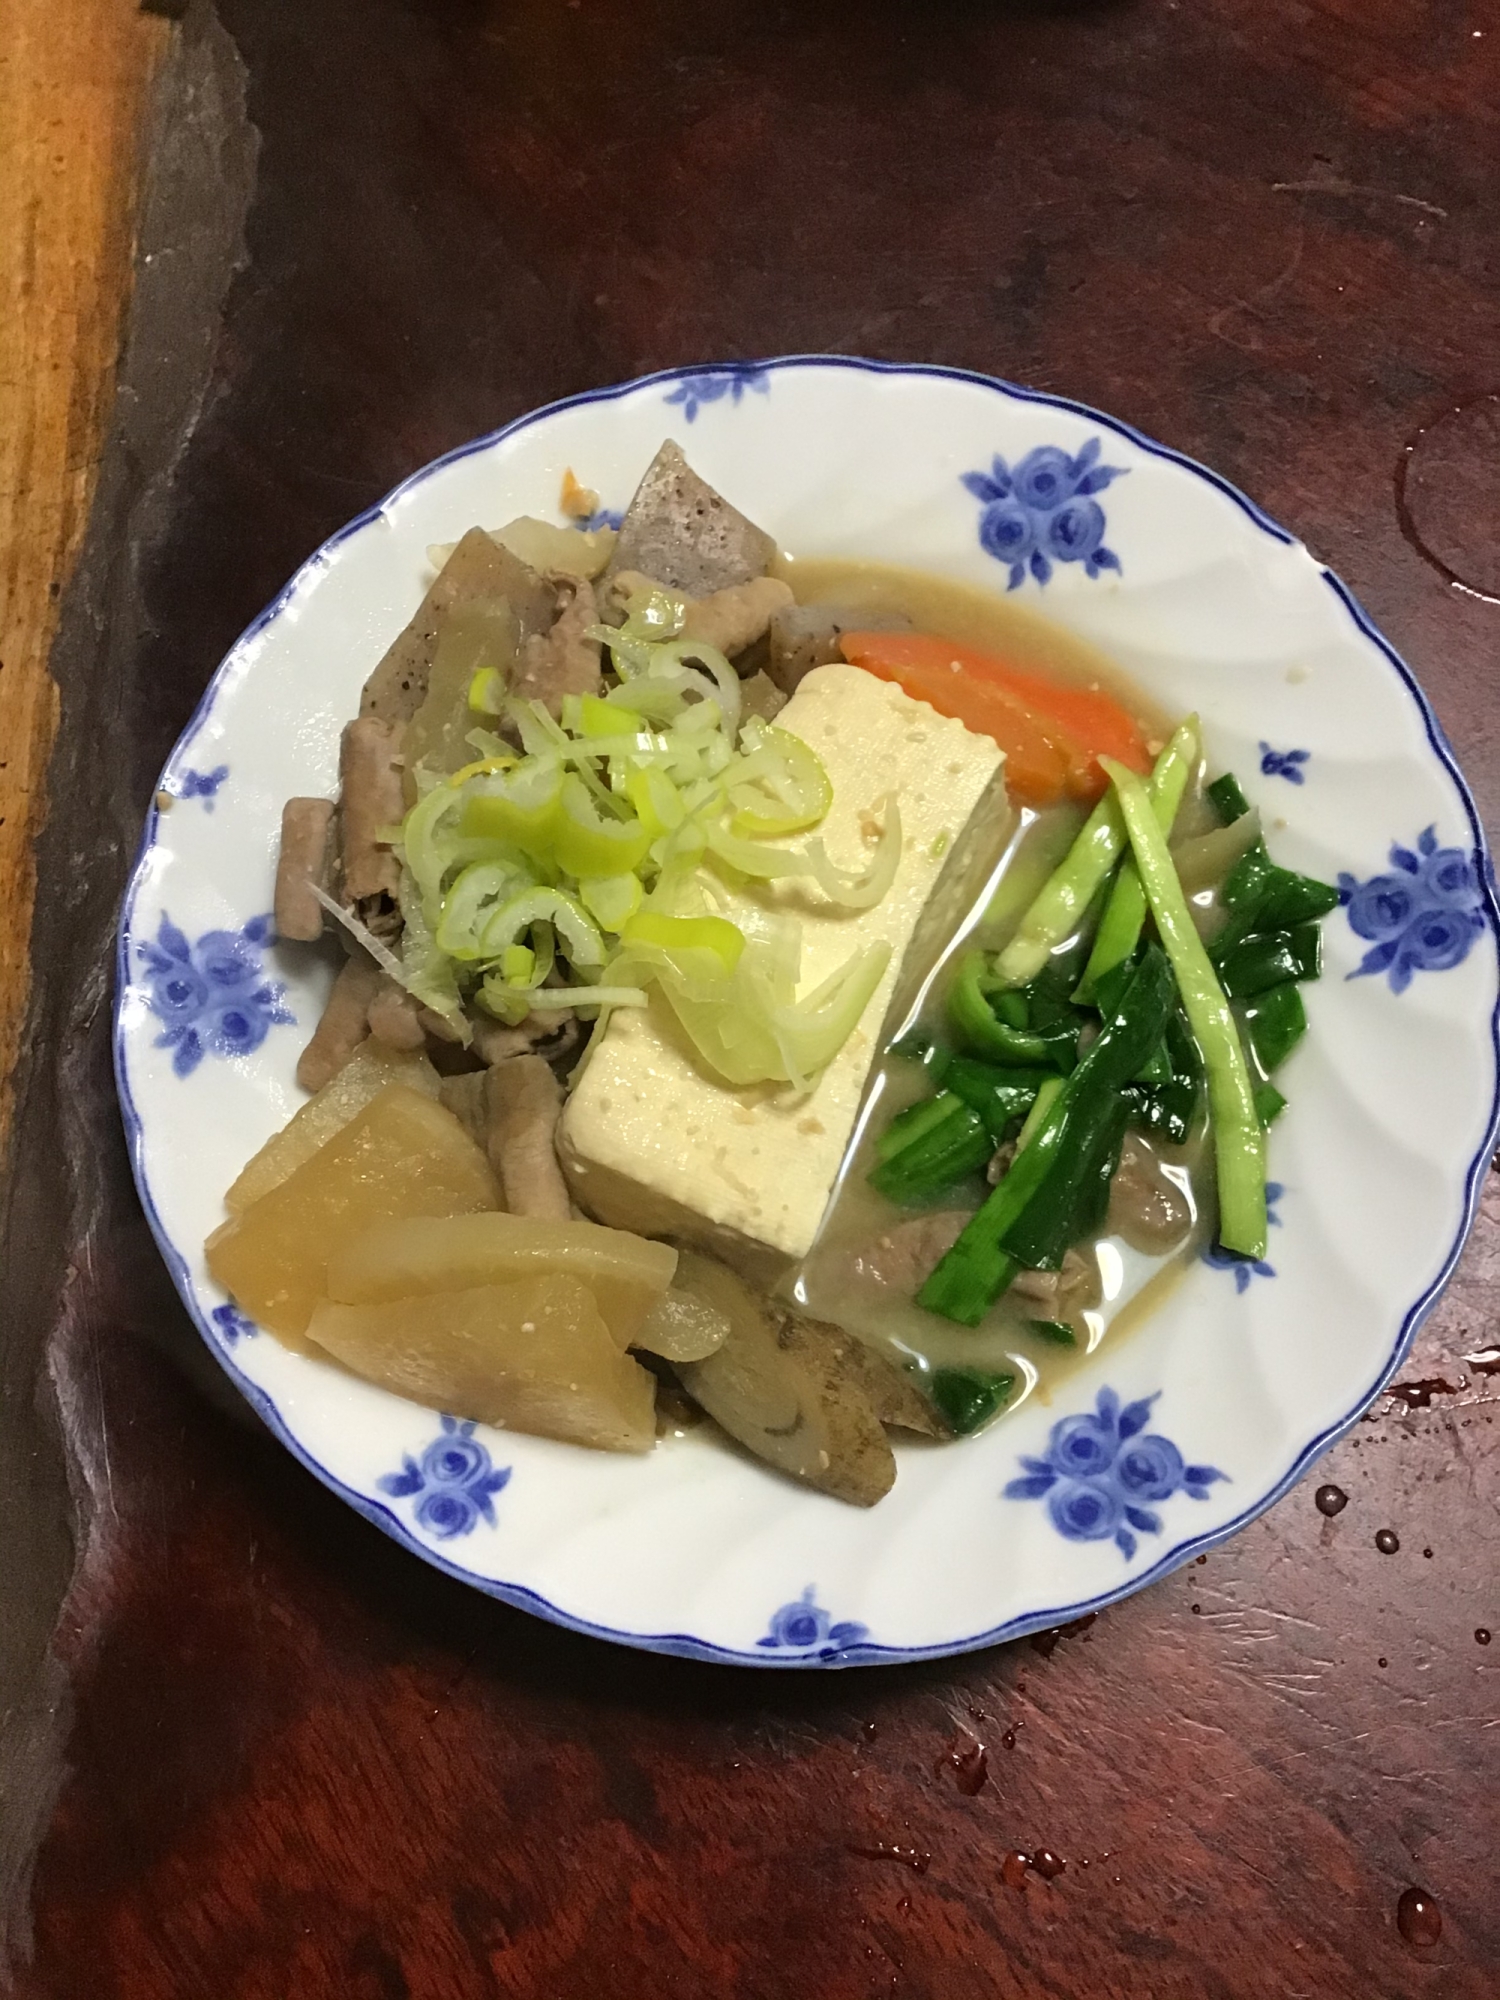 ゴボウ入りモツ煮豆腐withニラ。